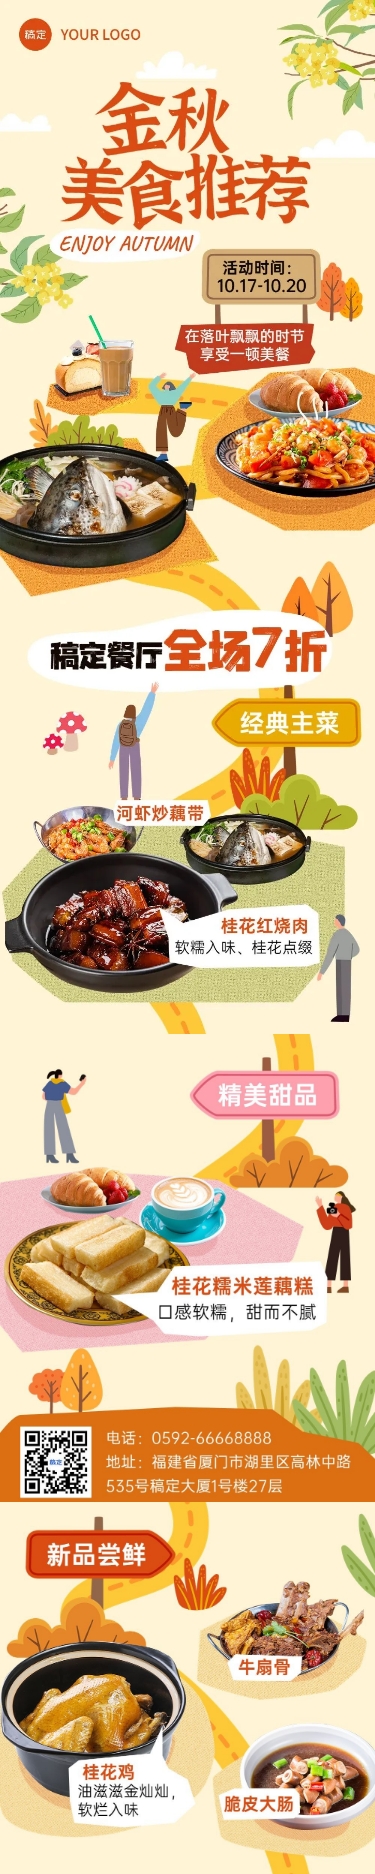 秋季美食推荐营销手绘插画文章长图